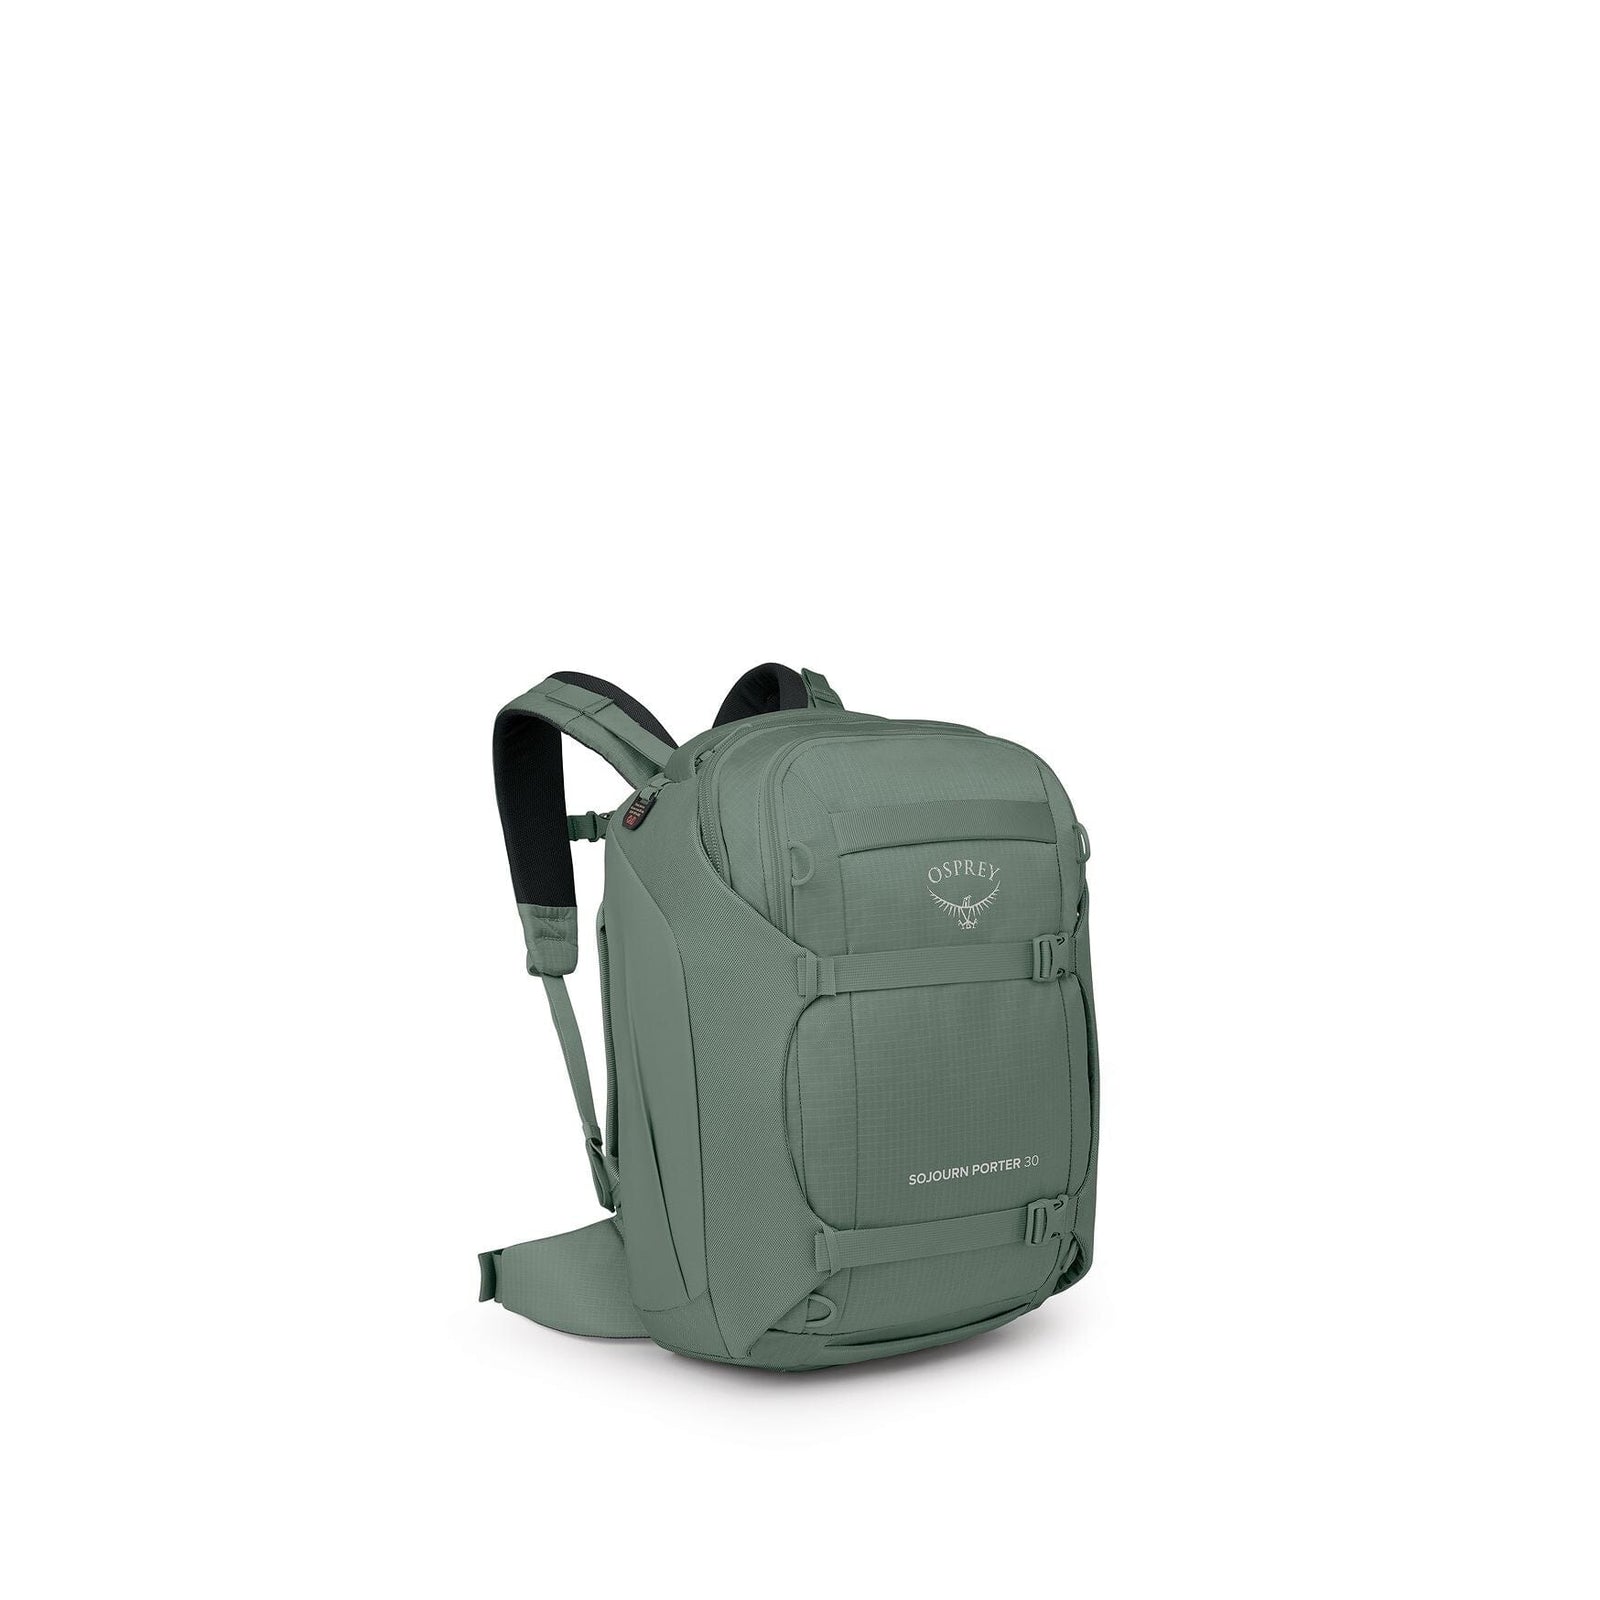 Osprey Sojourn Porter 30L Travel Backpack Koseret Green 